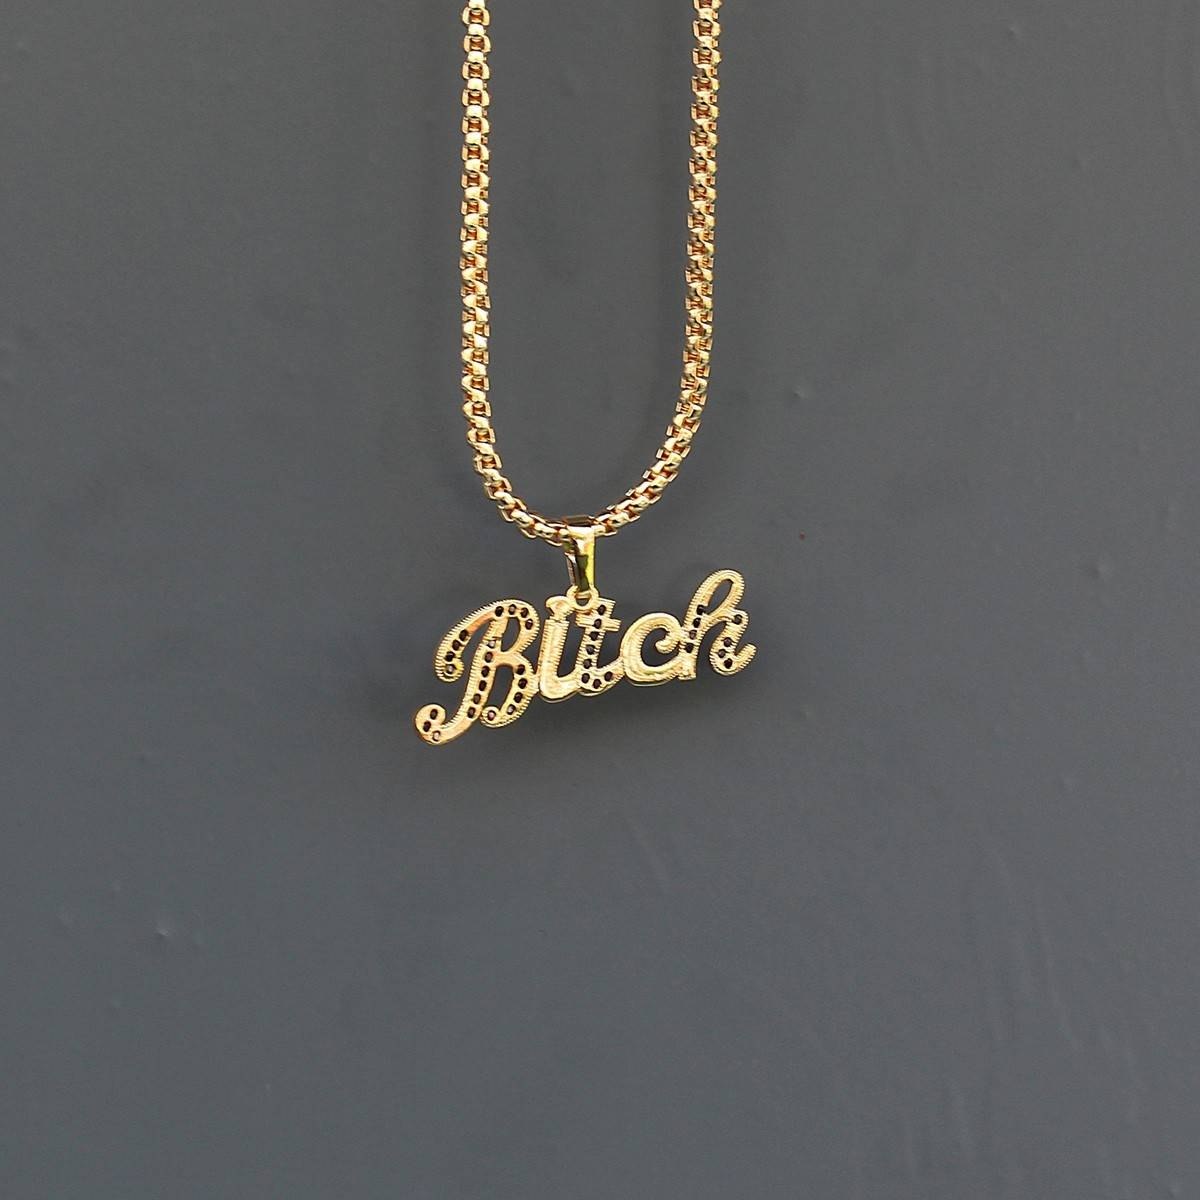 Men's Bitch Necklace Gold - 1